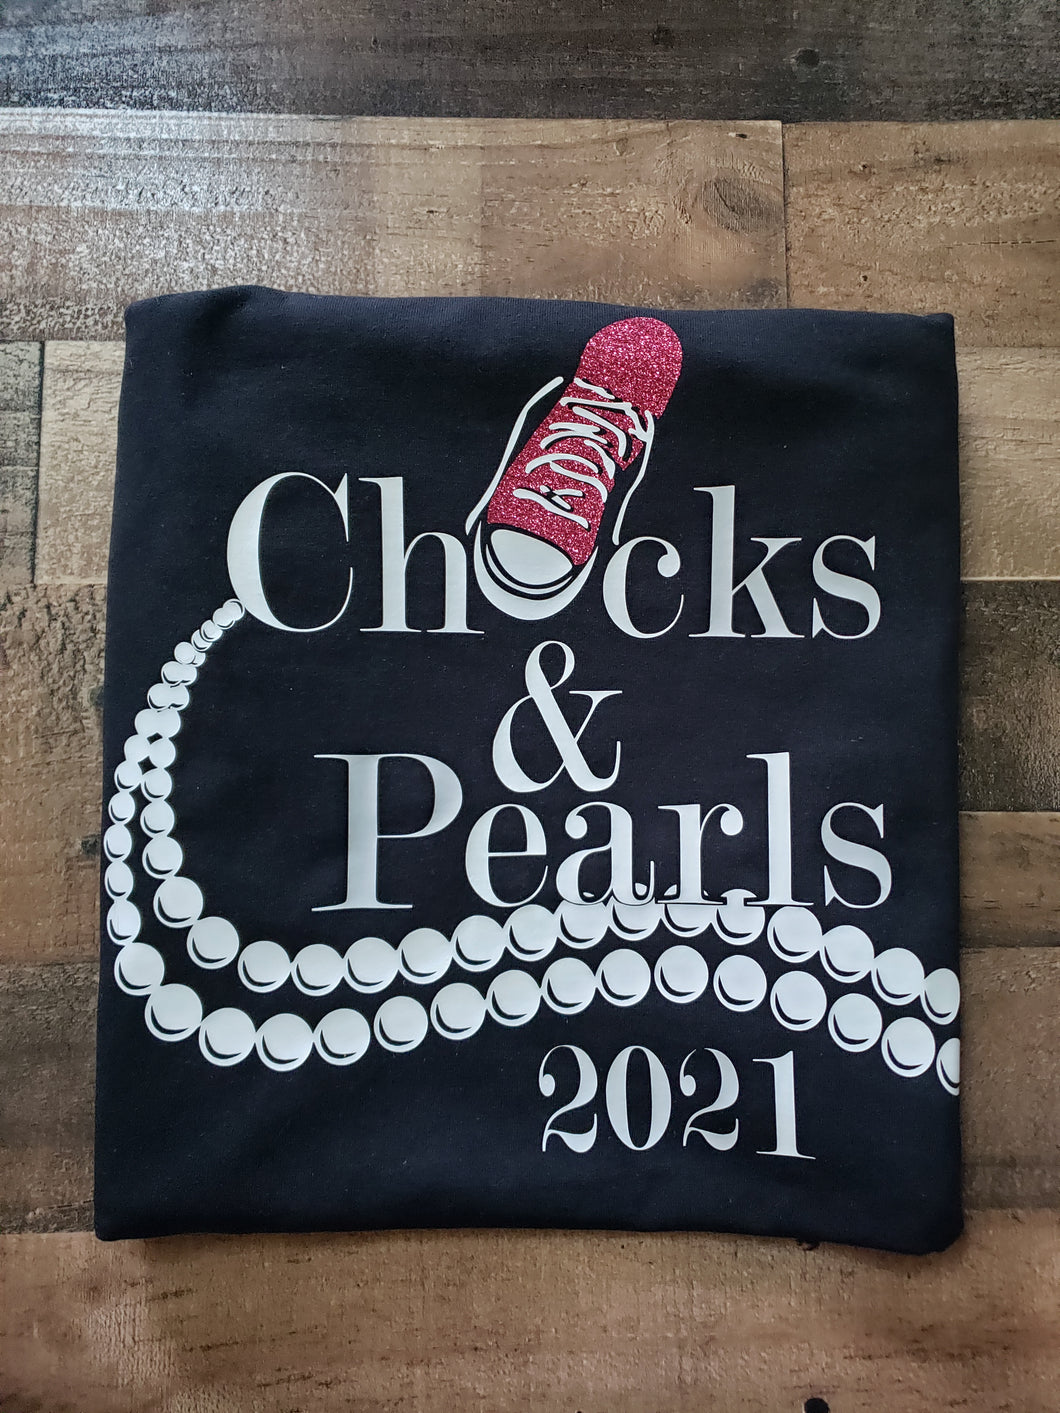 Chucks & Pearls 2021